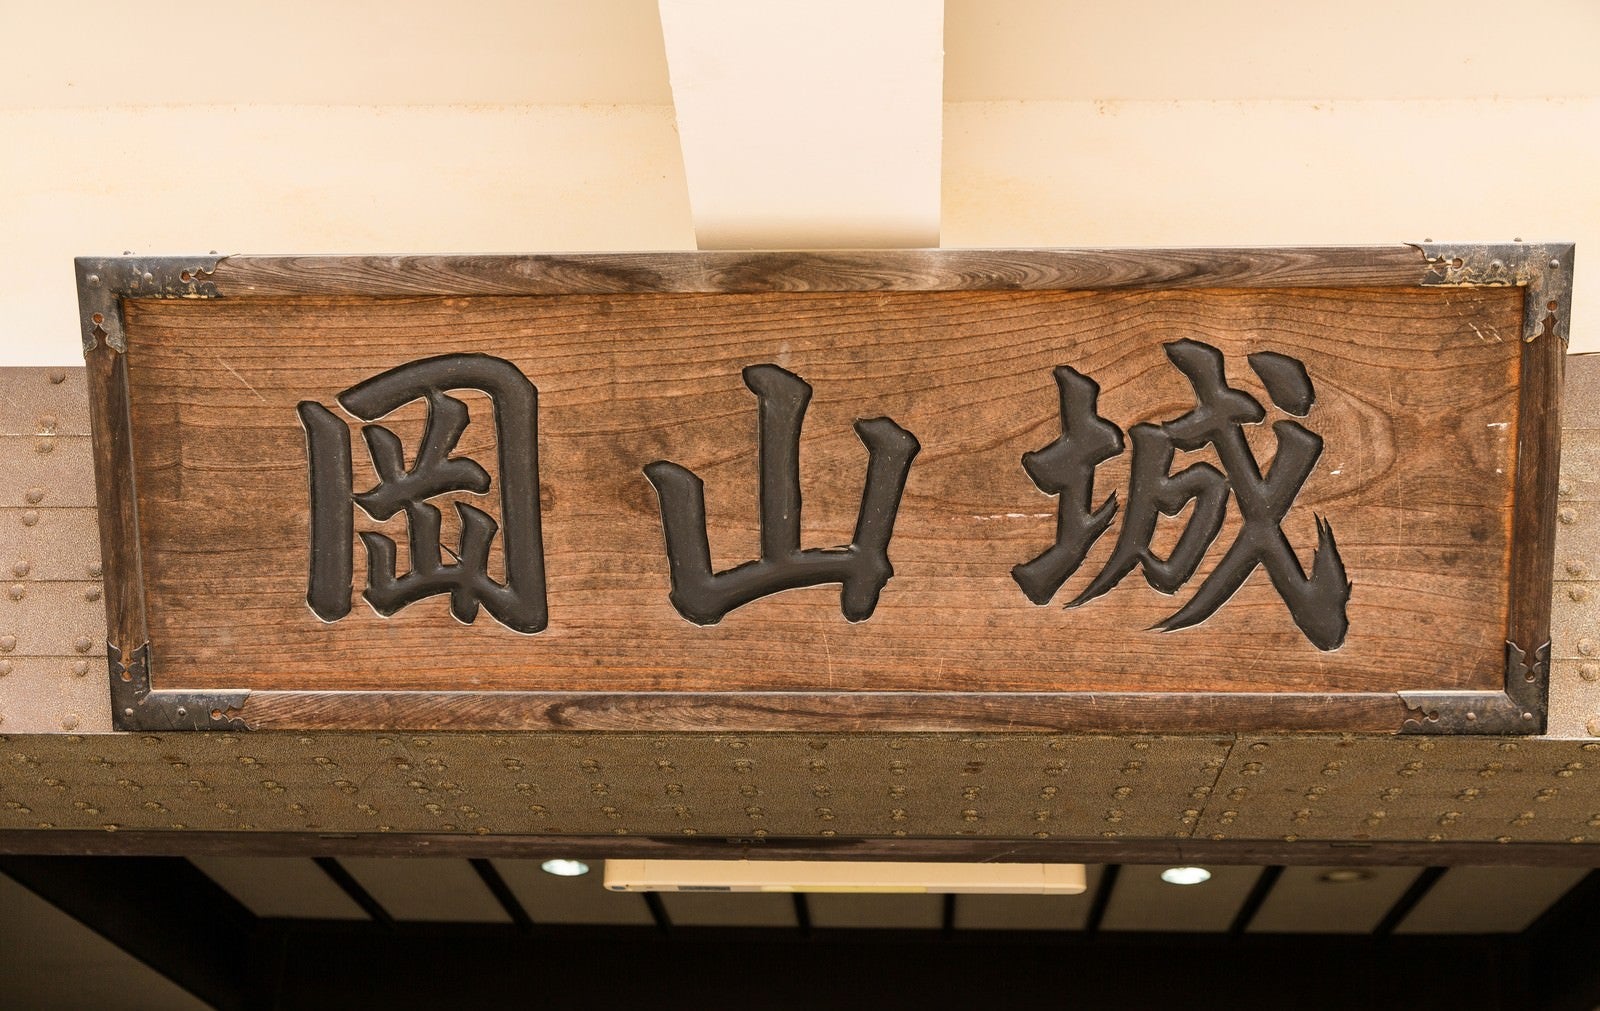 「岡山城と書かれた看板」の写真